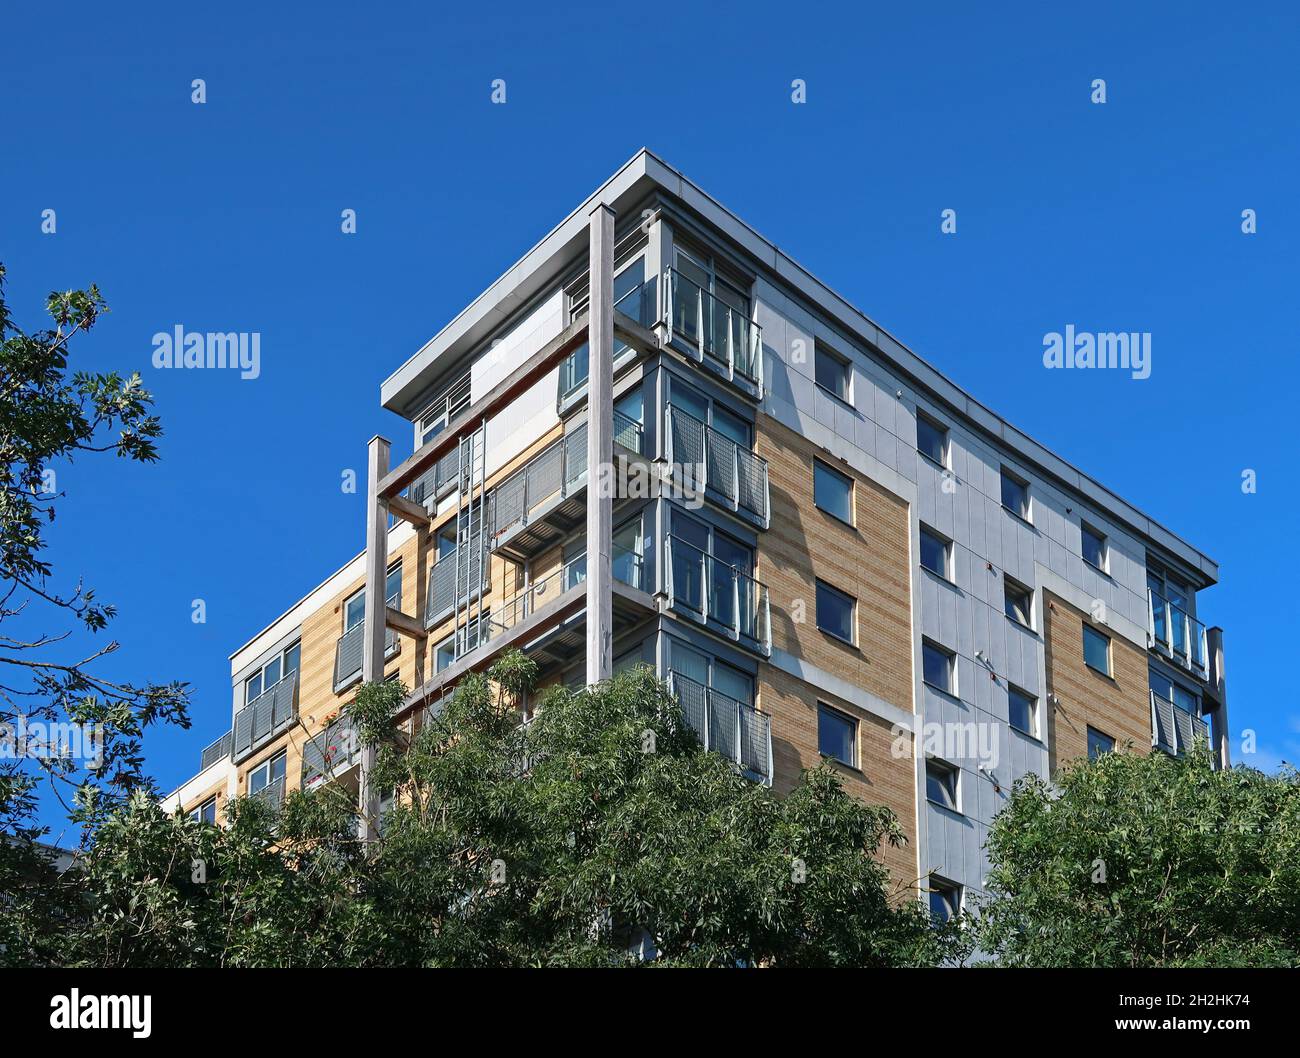 Galleria Court, Peckham, Londra. Un condominio privato a più piani con strutture esterne in legno distintive che sostengono i balconi Foto Stock